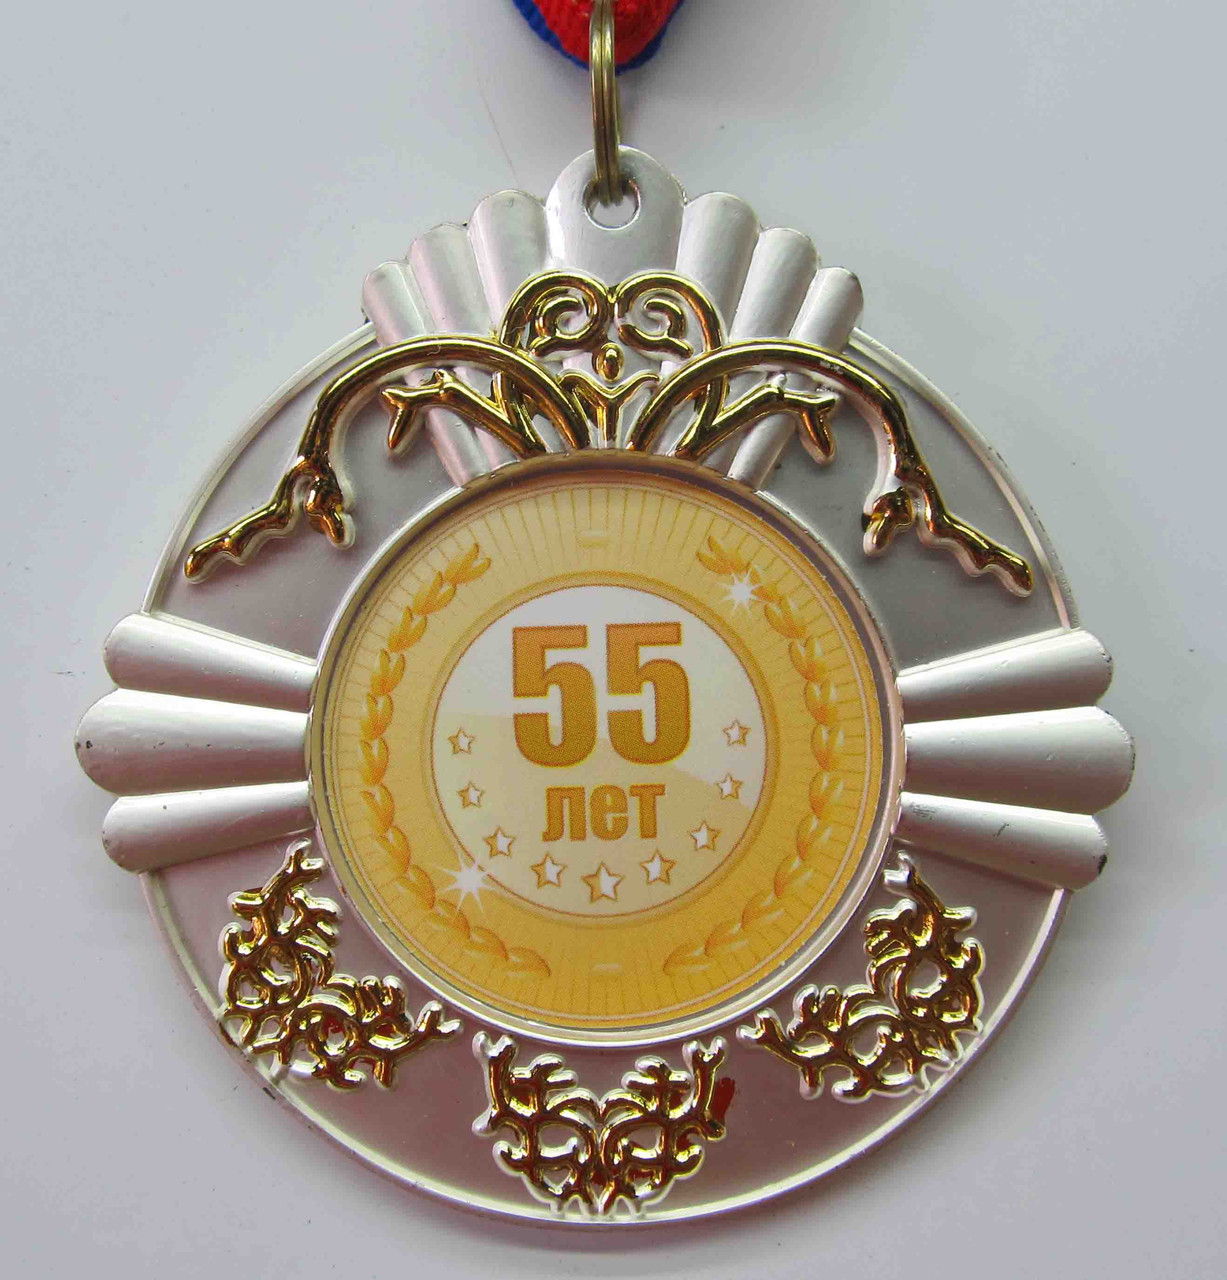 Металлическая медаль "55 лет". Діаметр-70мм.